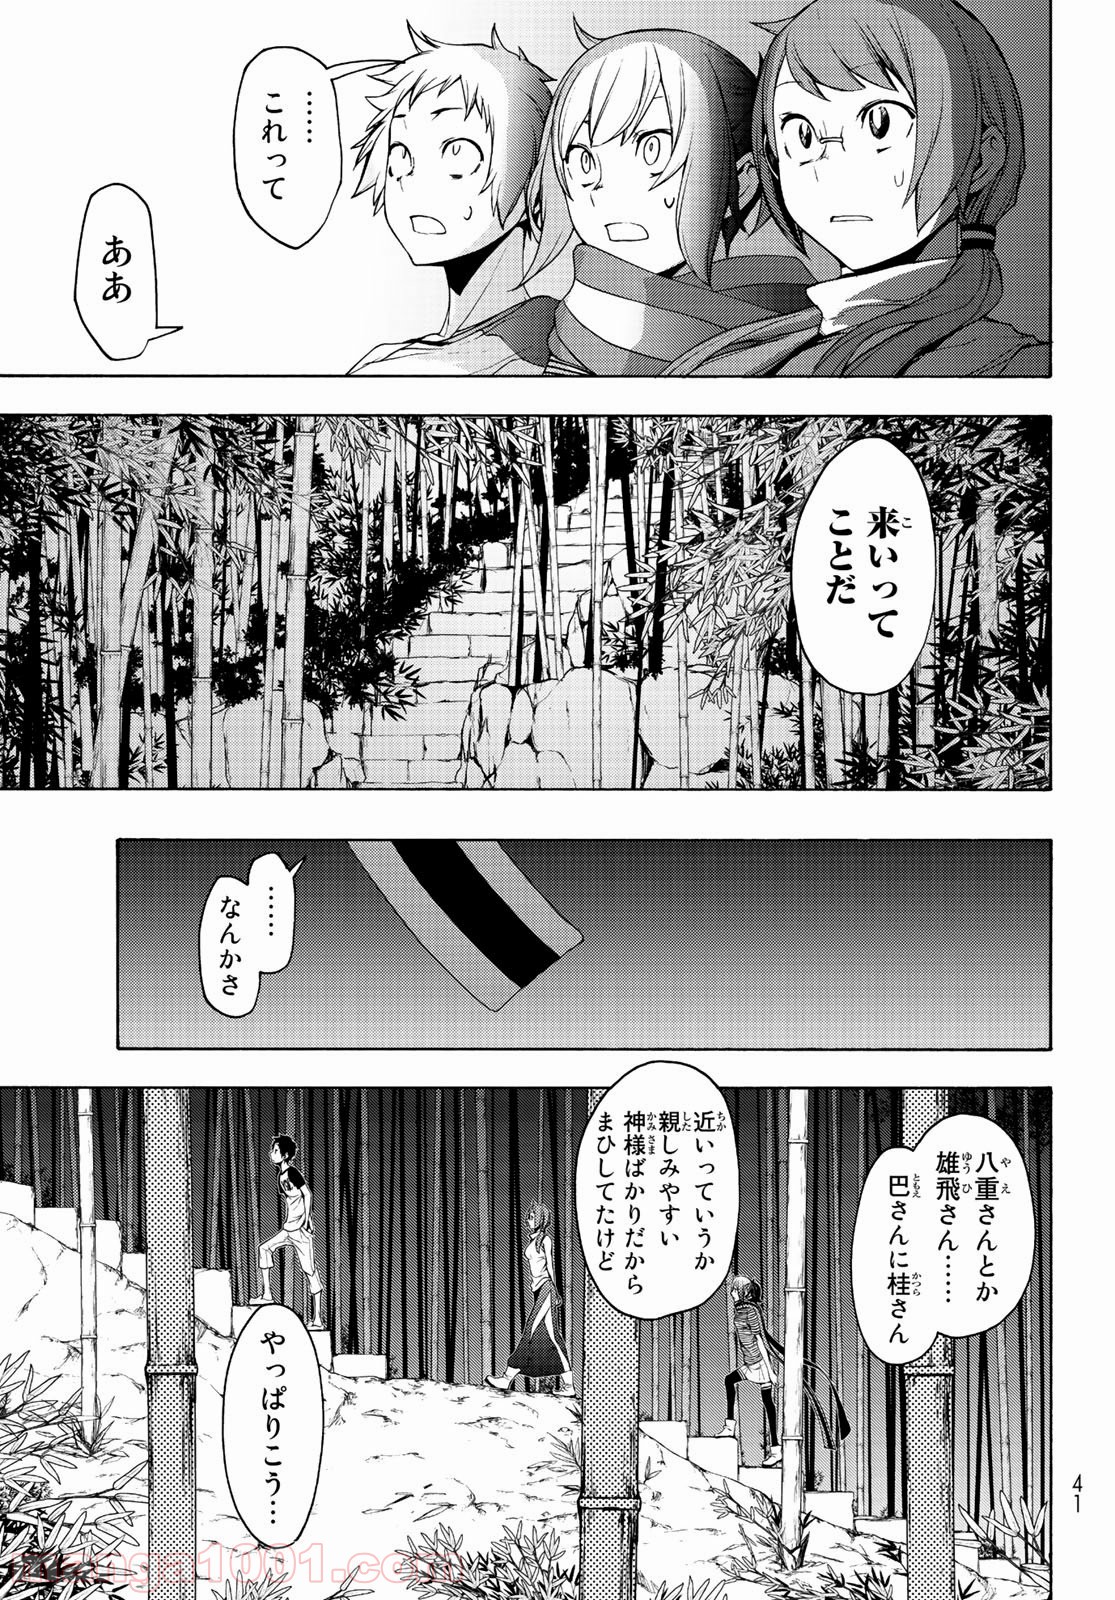 夜桜四重奏 ヨザクラカルテット Raw 第150話 Manga Raw